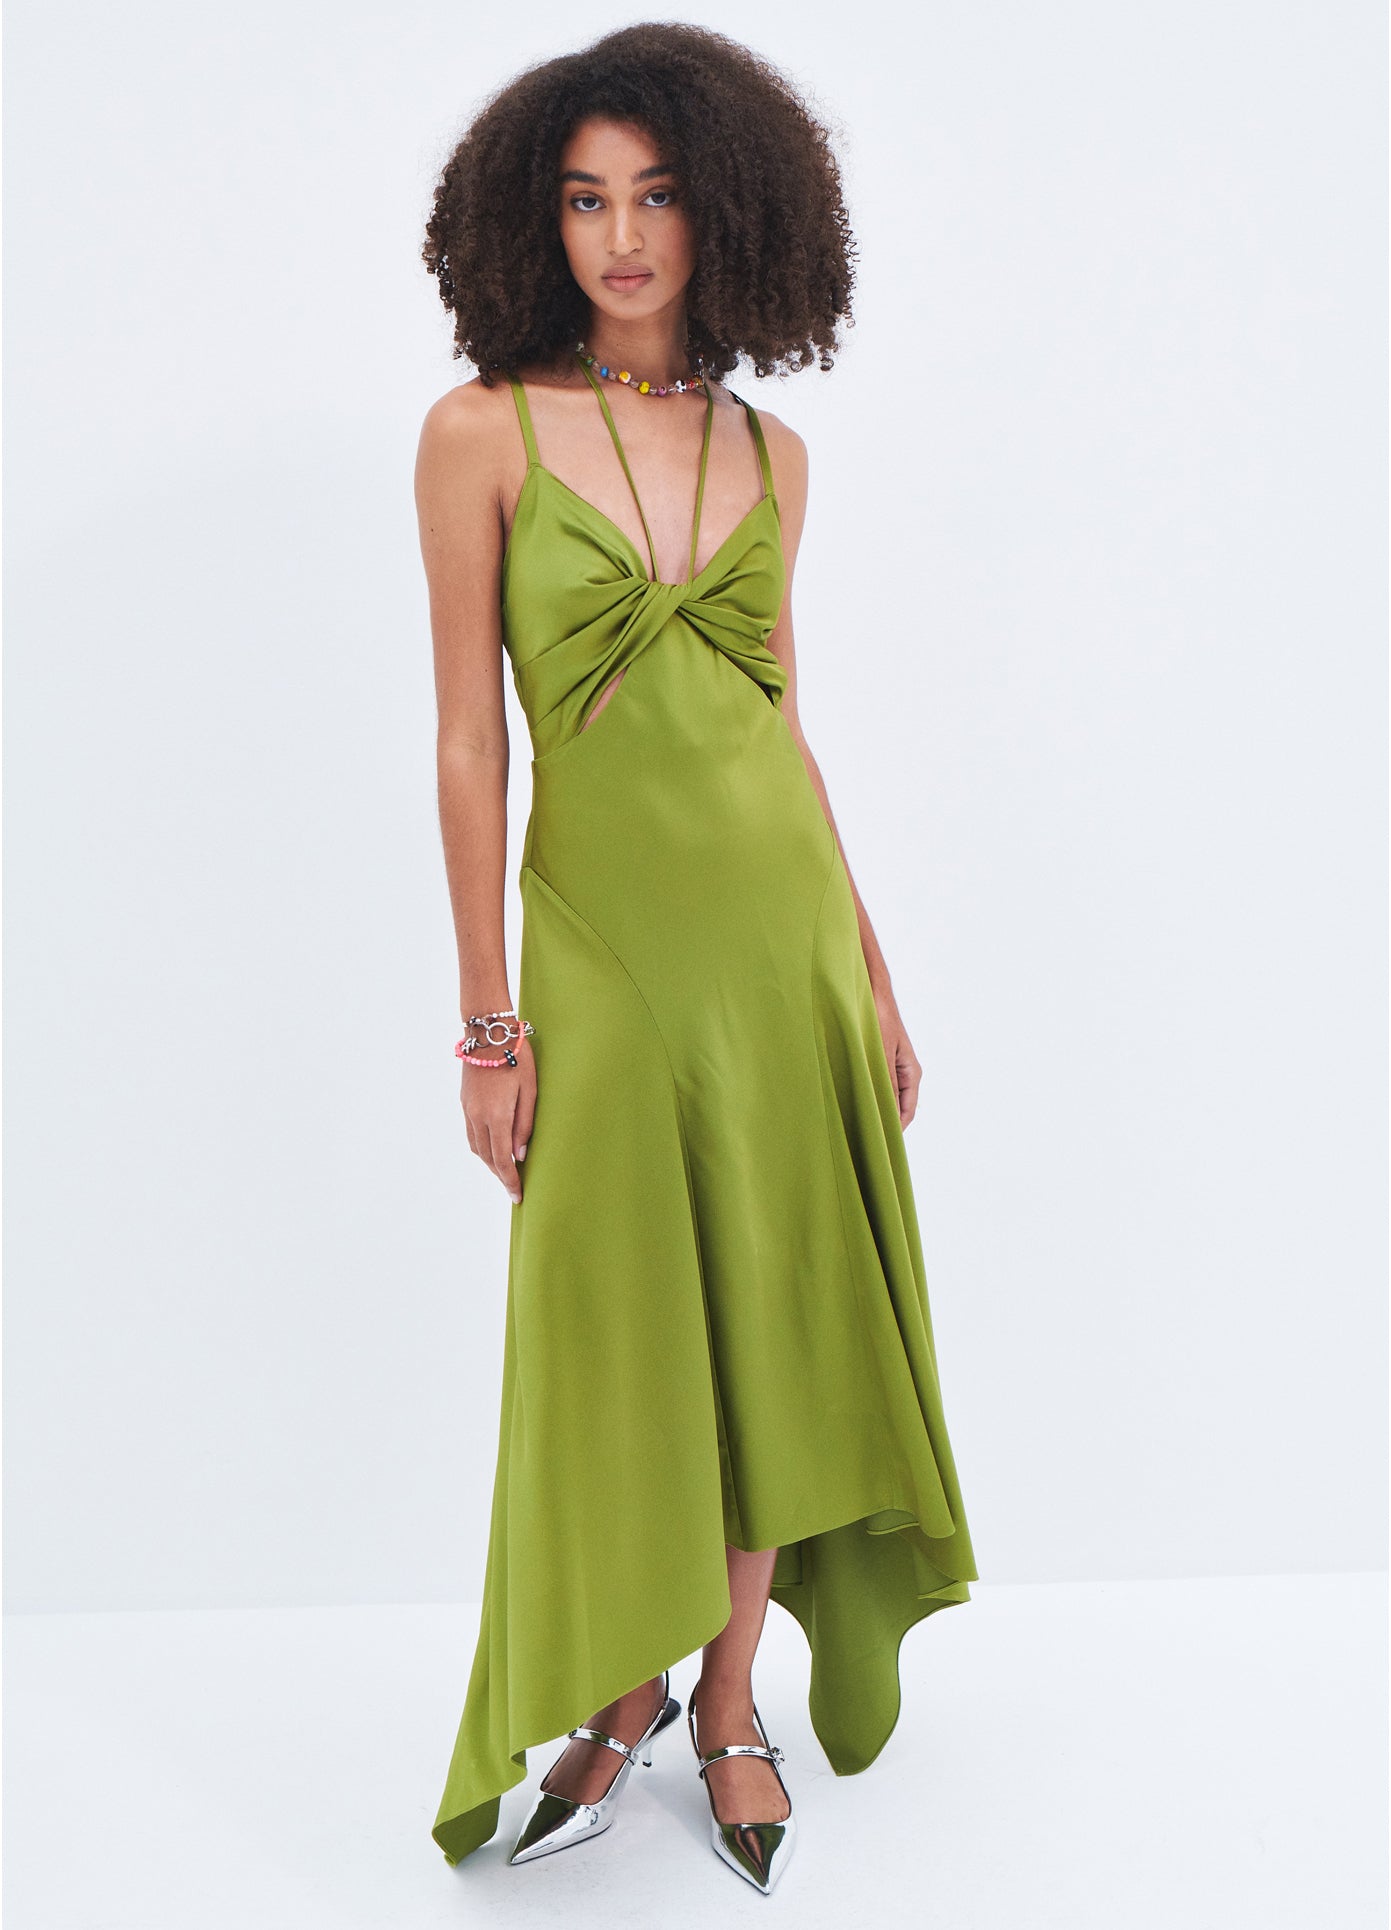 MONSE Satin Draped Slip Dress in Olive on model full front view